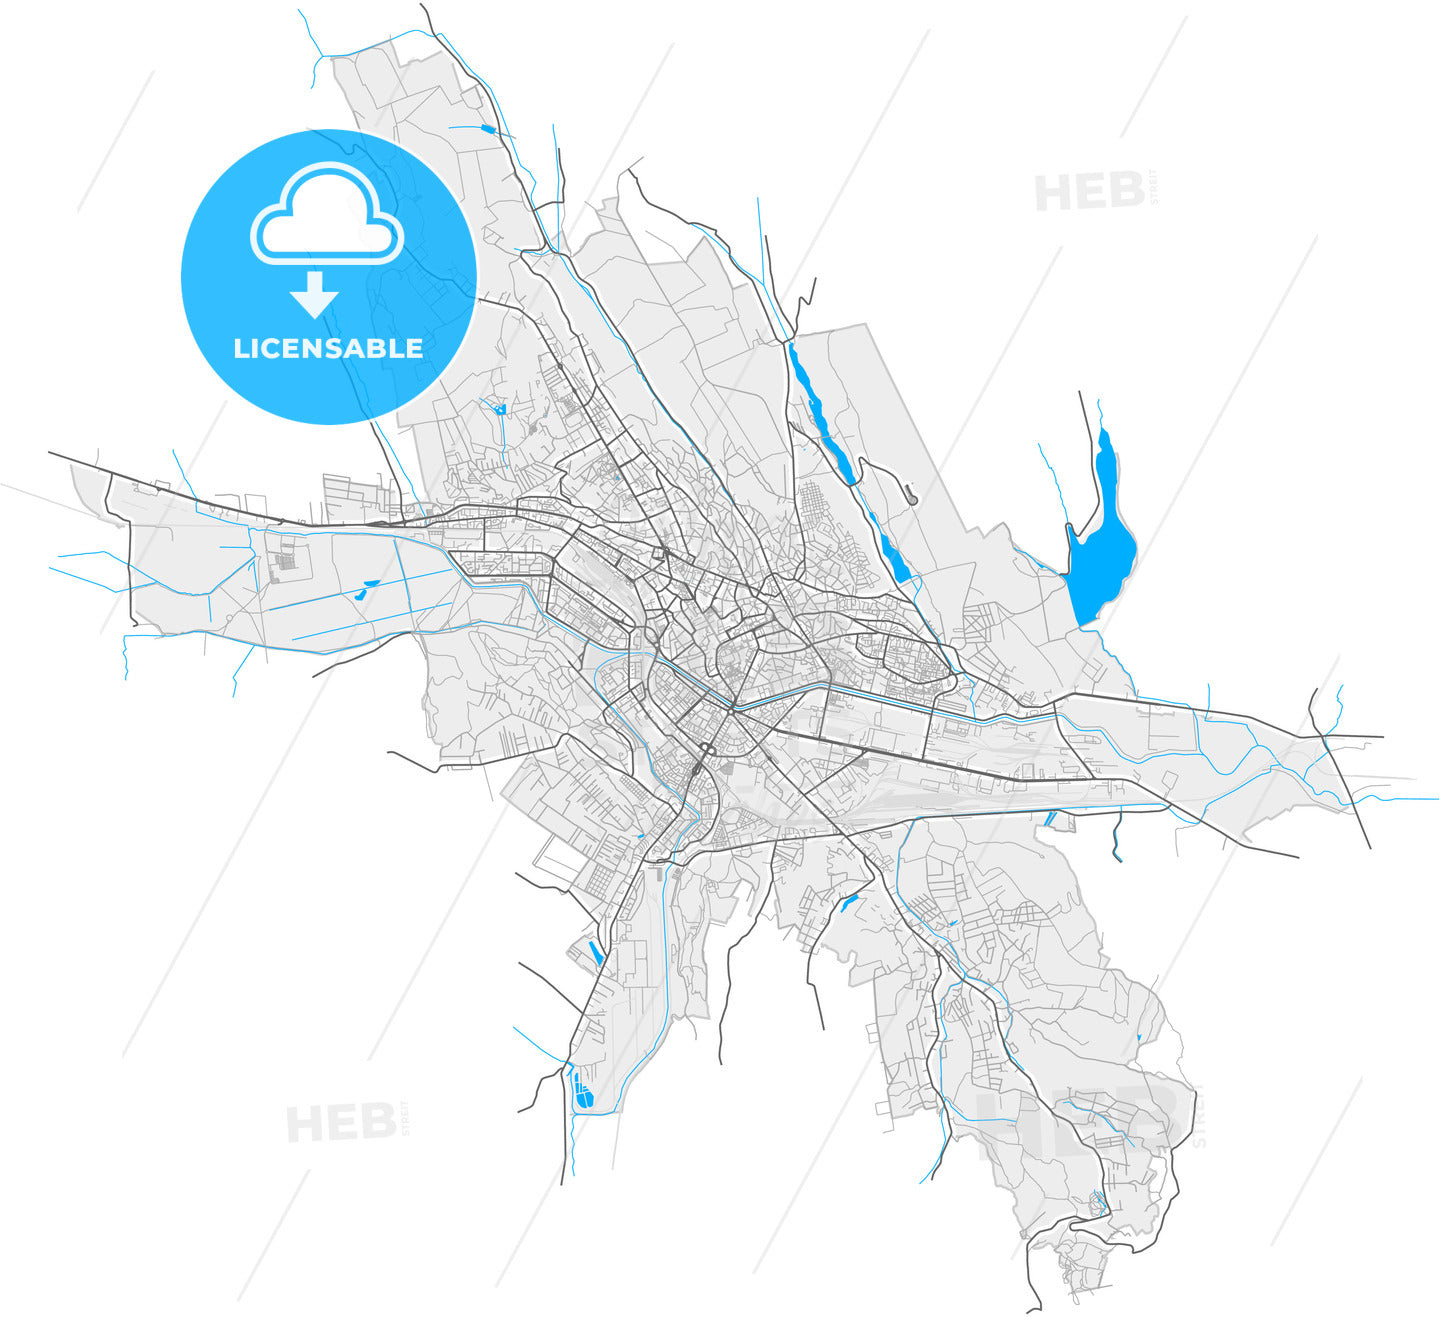 Iași, Iași, Romania, high quality vector map